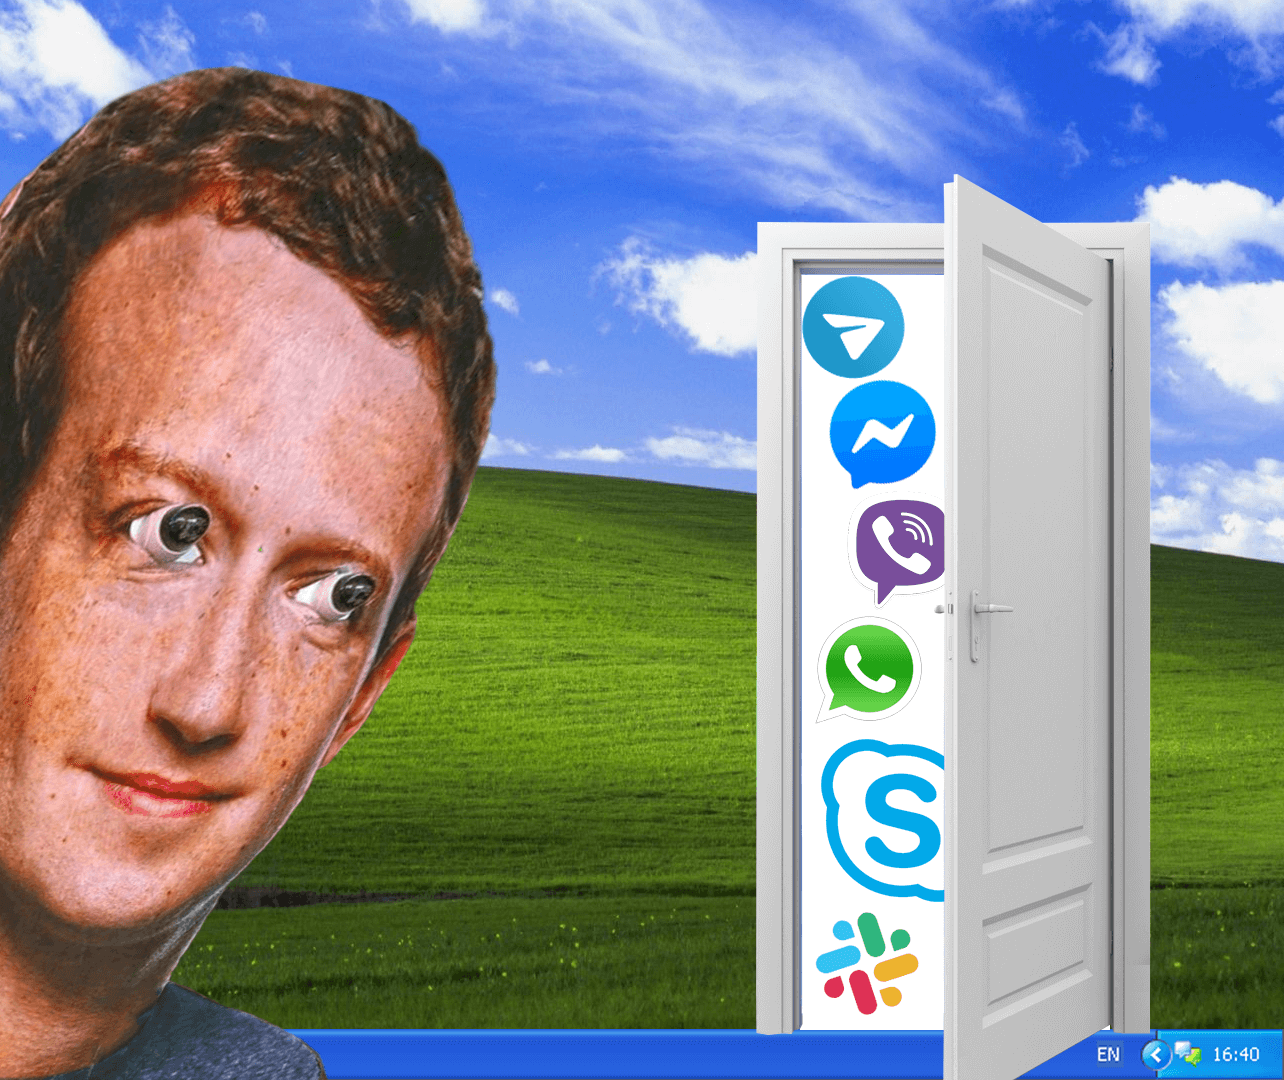 Zuckerberg and messengers